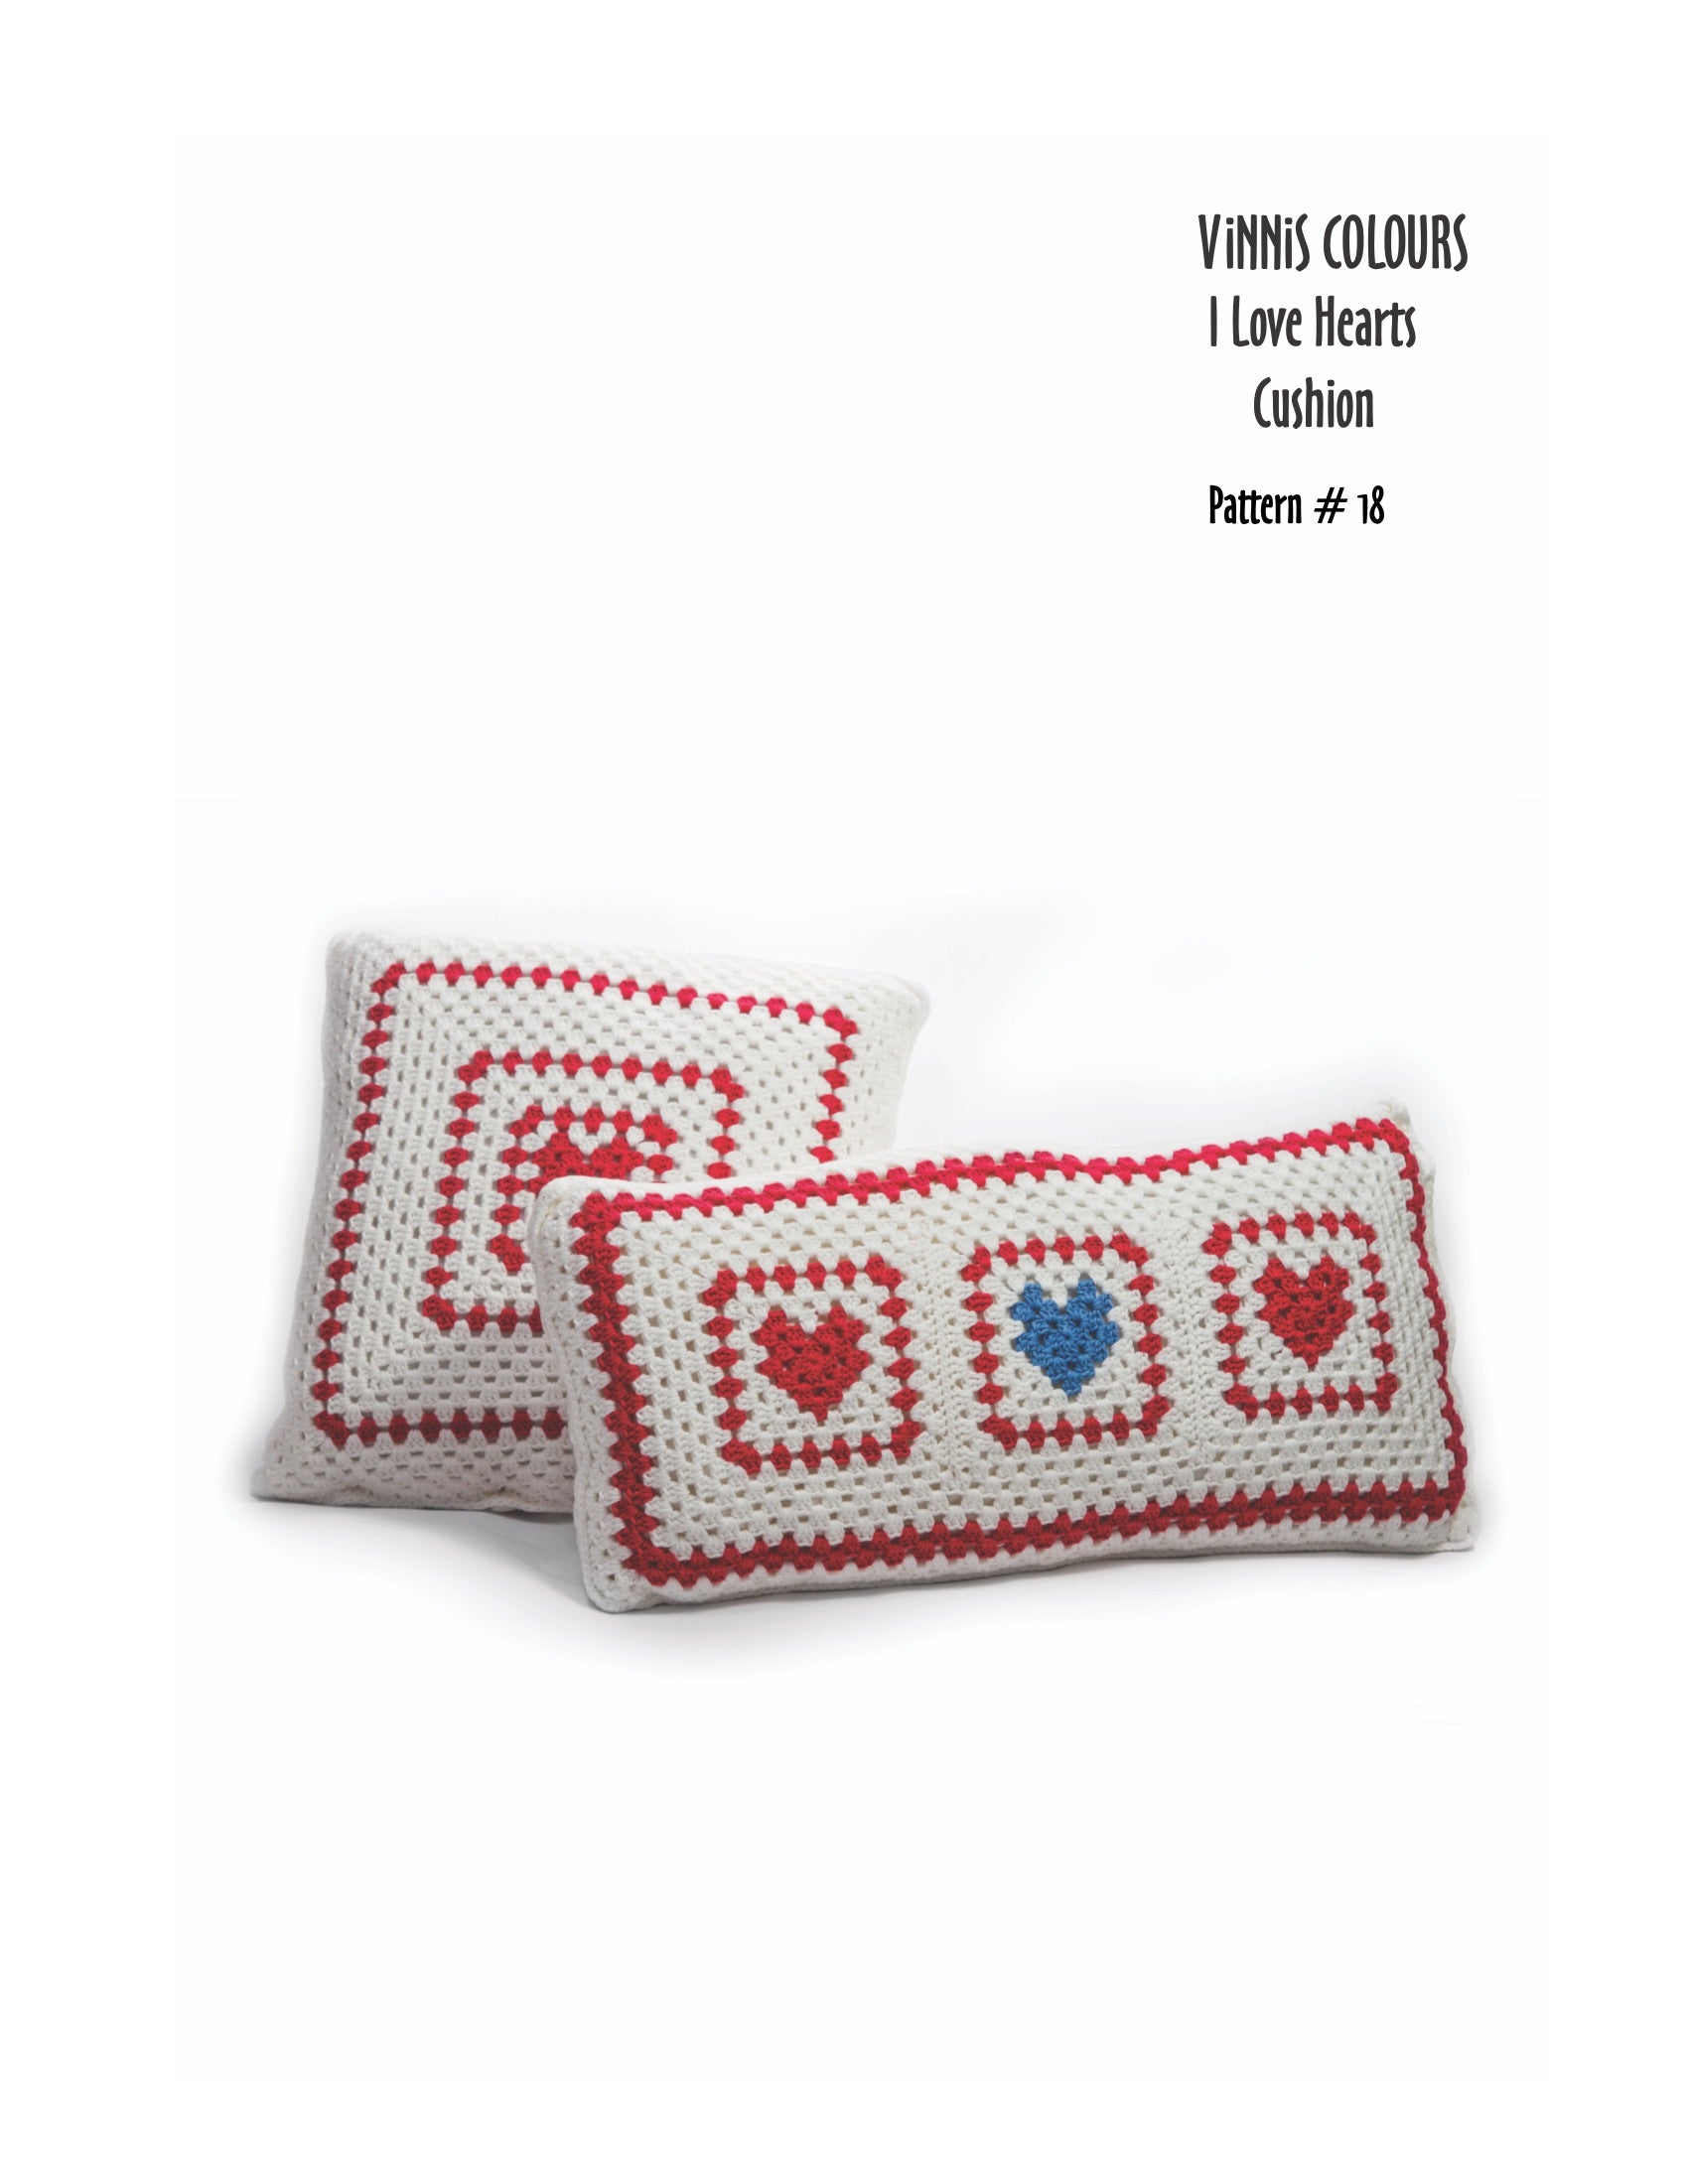 VCDL - P018 - I Love Hearts Cushion